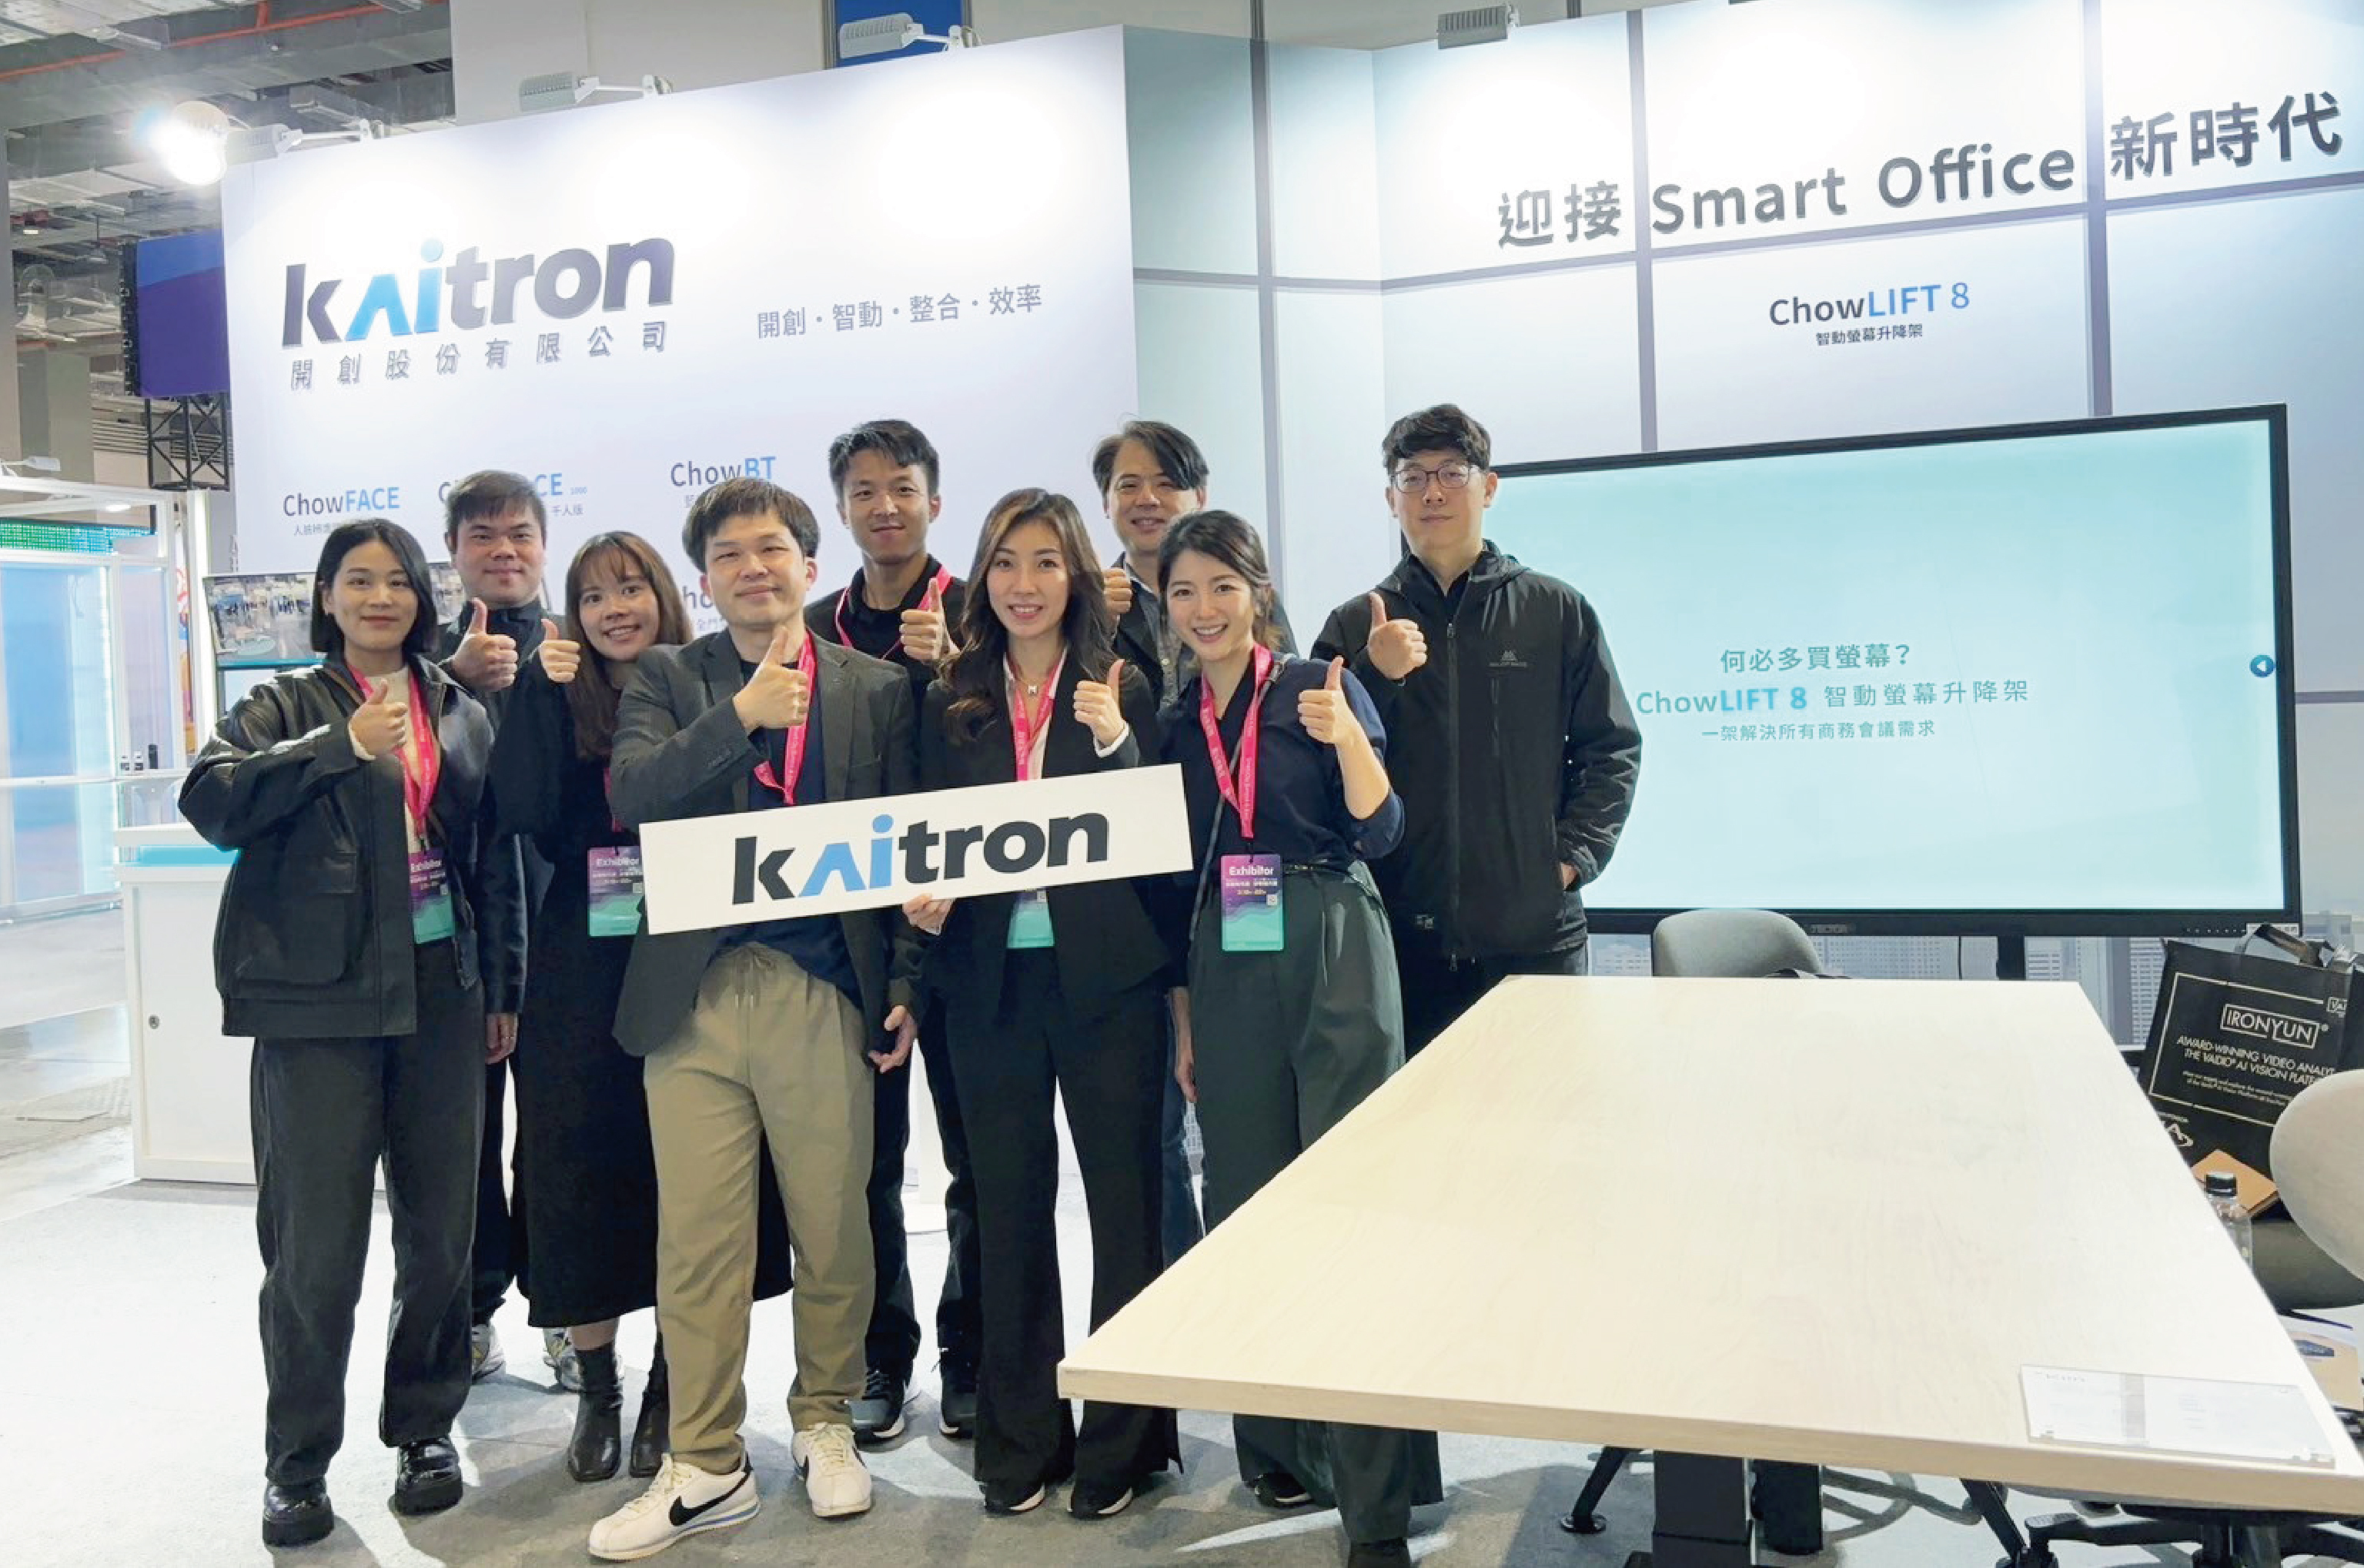 開創Kaitron為中小企業解決辦公室痛點，以全新智慧辦公室思維應用，迎接 Smart Office 新時代。